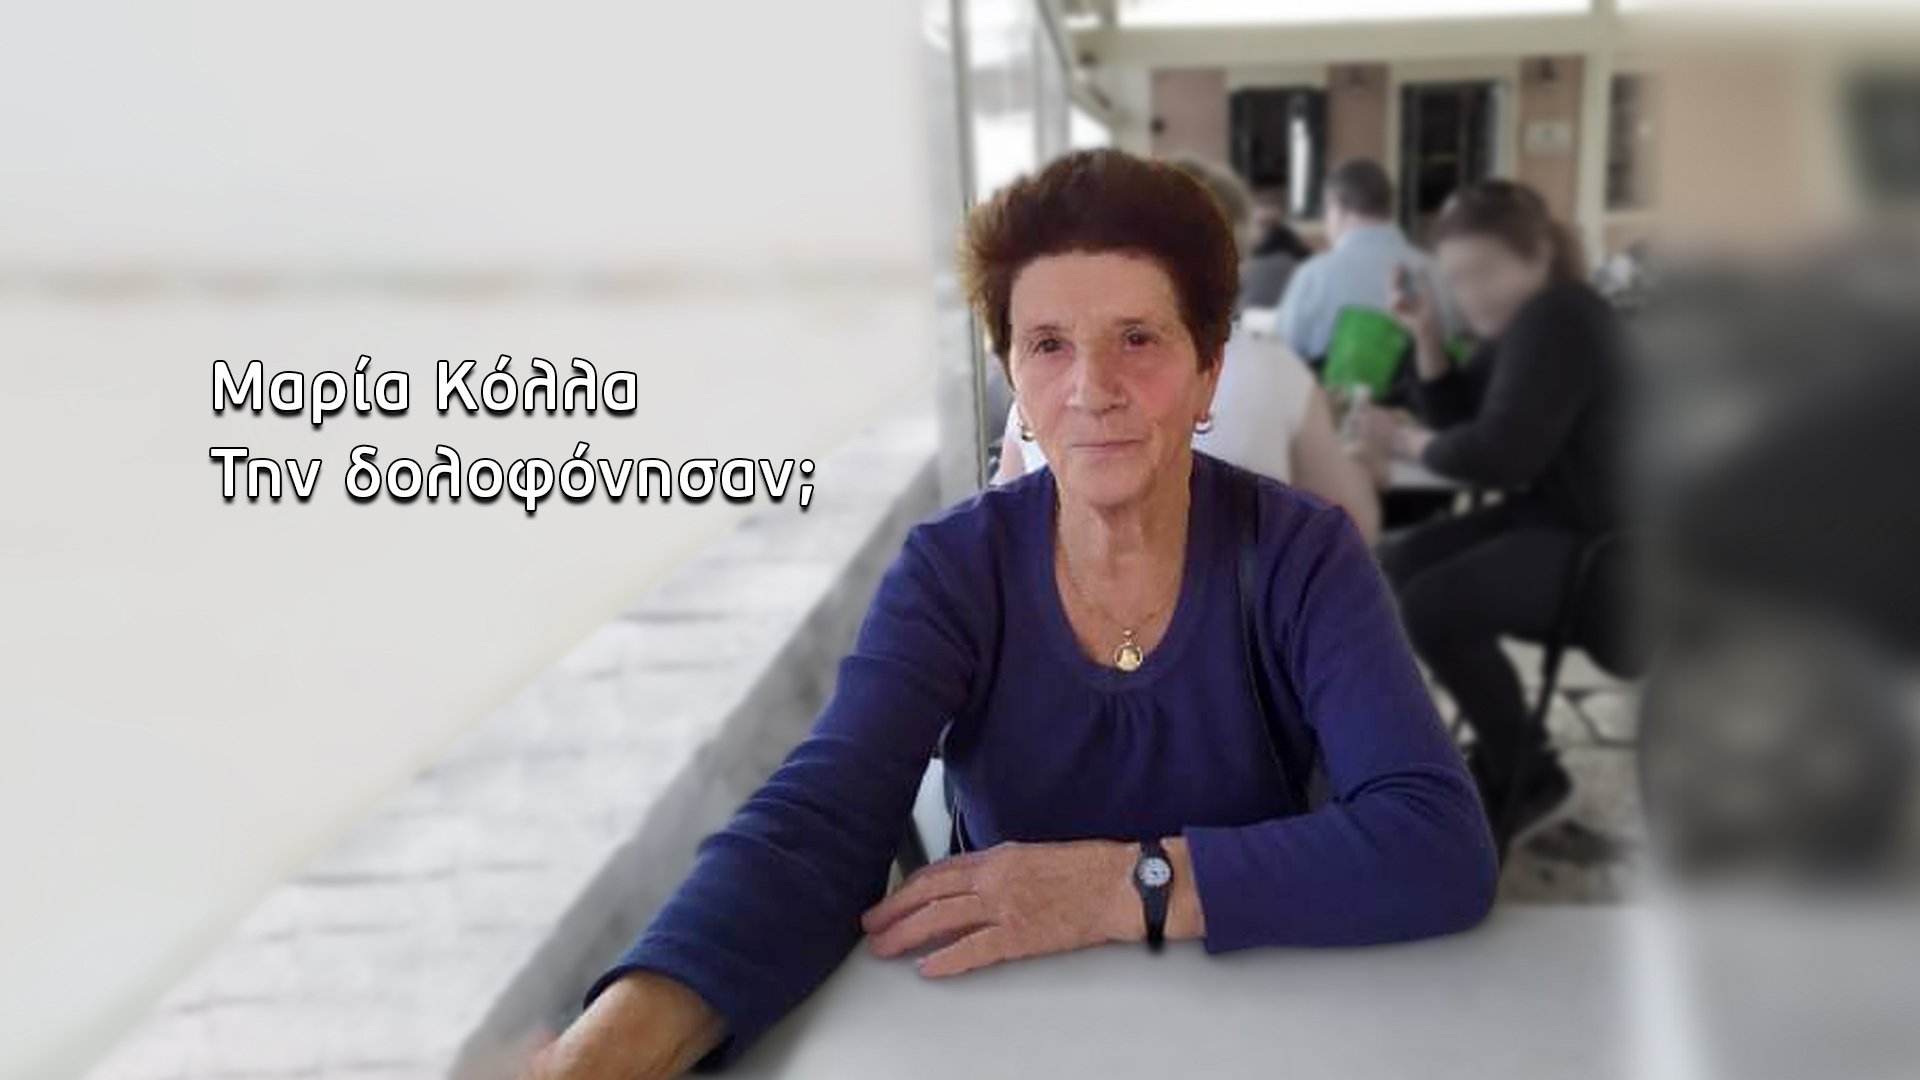 Μαρία Κόλλα: Αποκαλυπτική μαρτυρία για τη μυστηριώδη εξαφάνιση – “Η πώληση του κτήματος που σκάλωσε στα χρήματα”